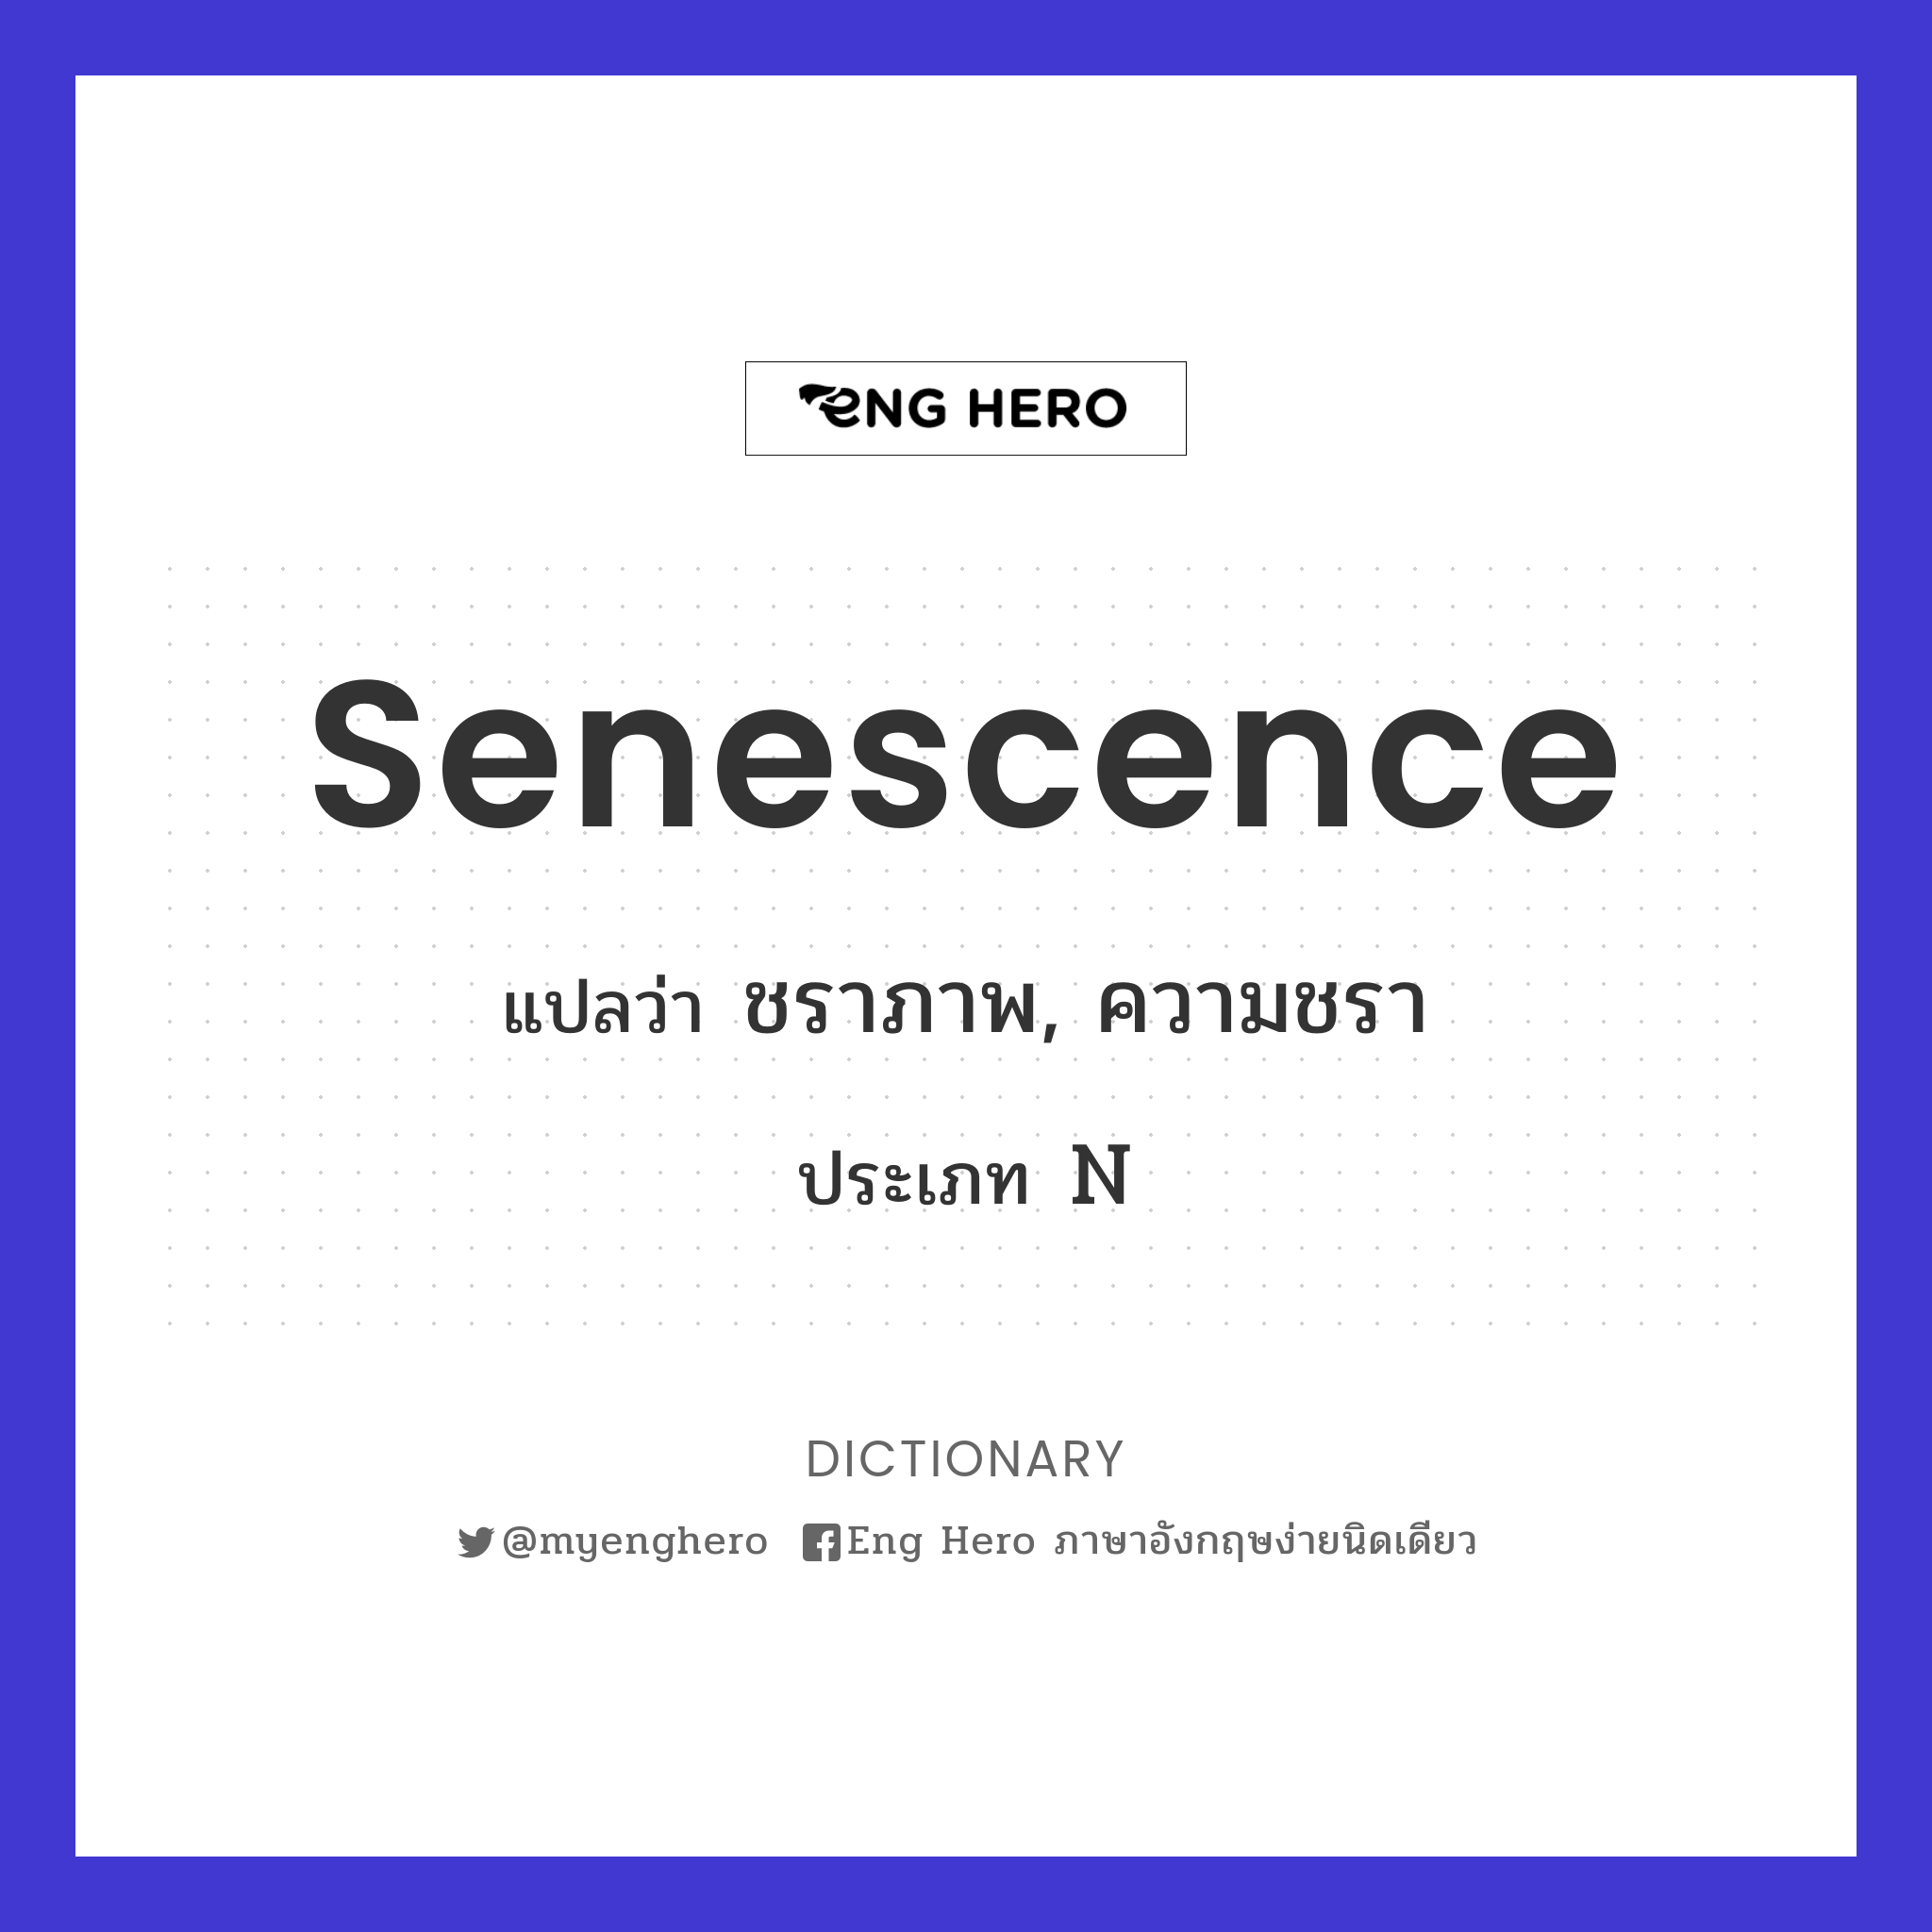 senescence